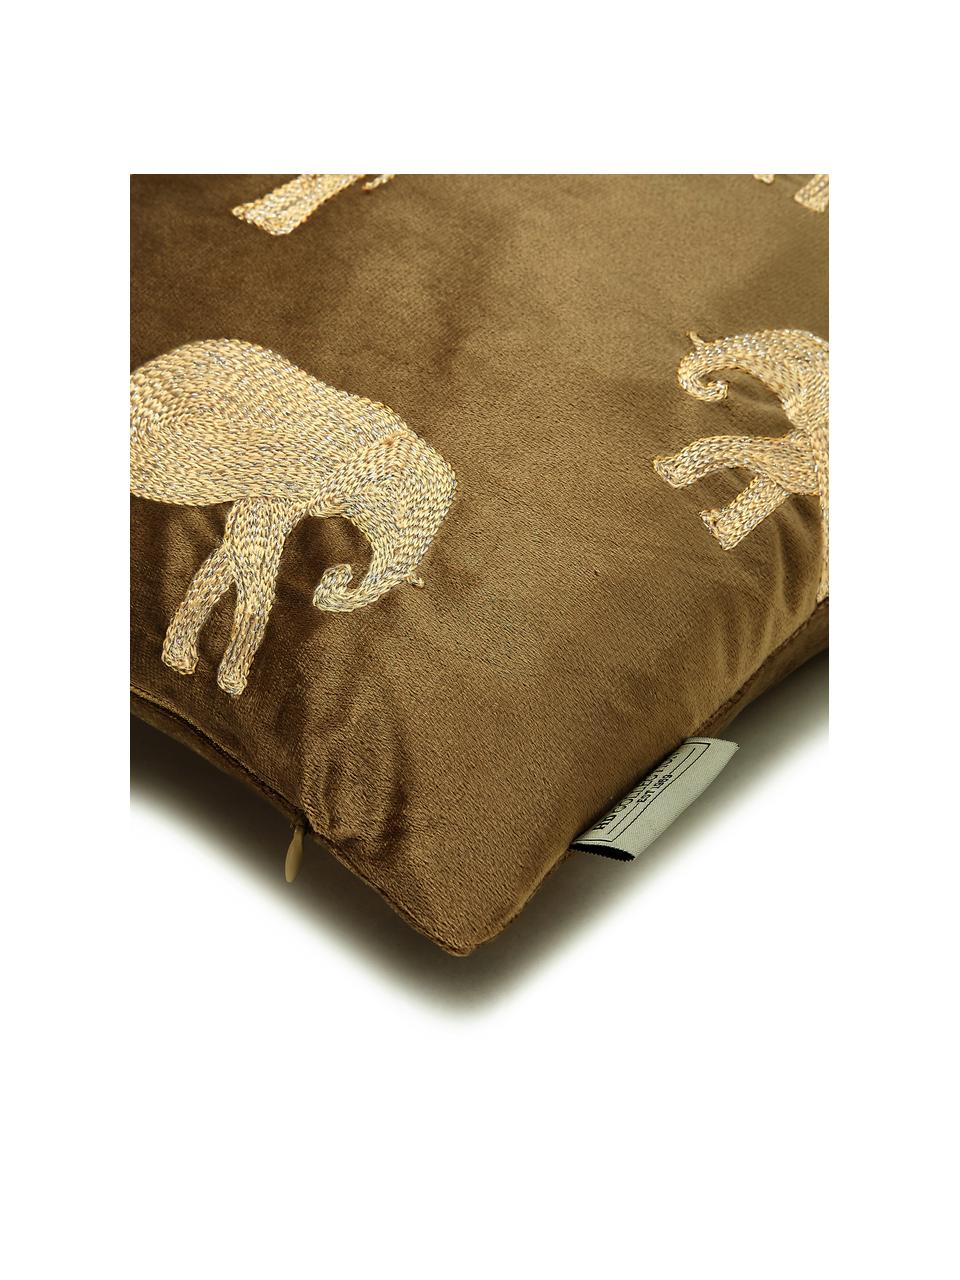 Gold besticktes Samt-Kissen Elephant in Braun, mit Inlett, 100% Samt (Polyester), Braun, Goldfarben, 45 x 45 cm